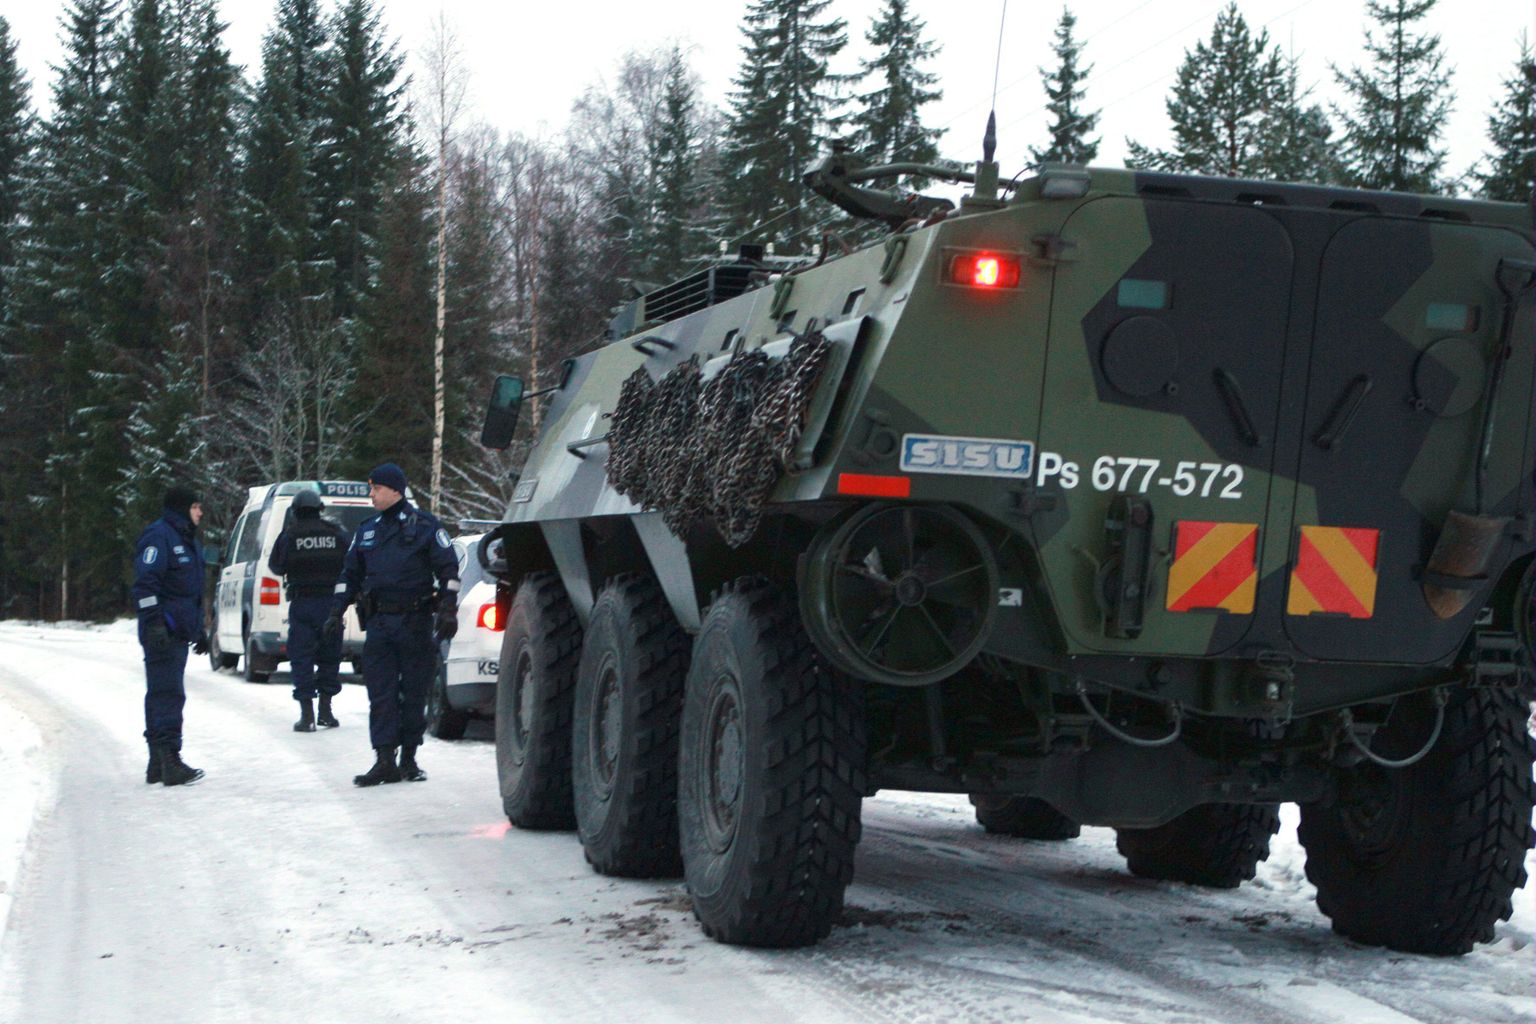 Soome sõjaväe soomuk ja politseiautod eile Jyväskylä lähistel Kuohu külas.